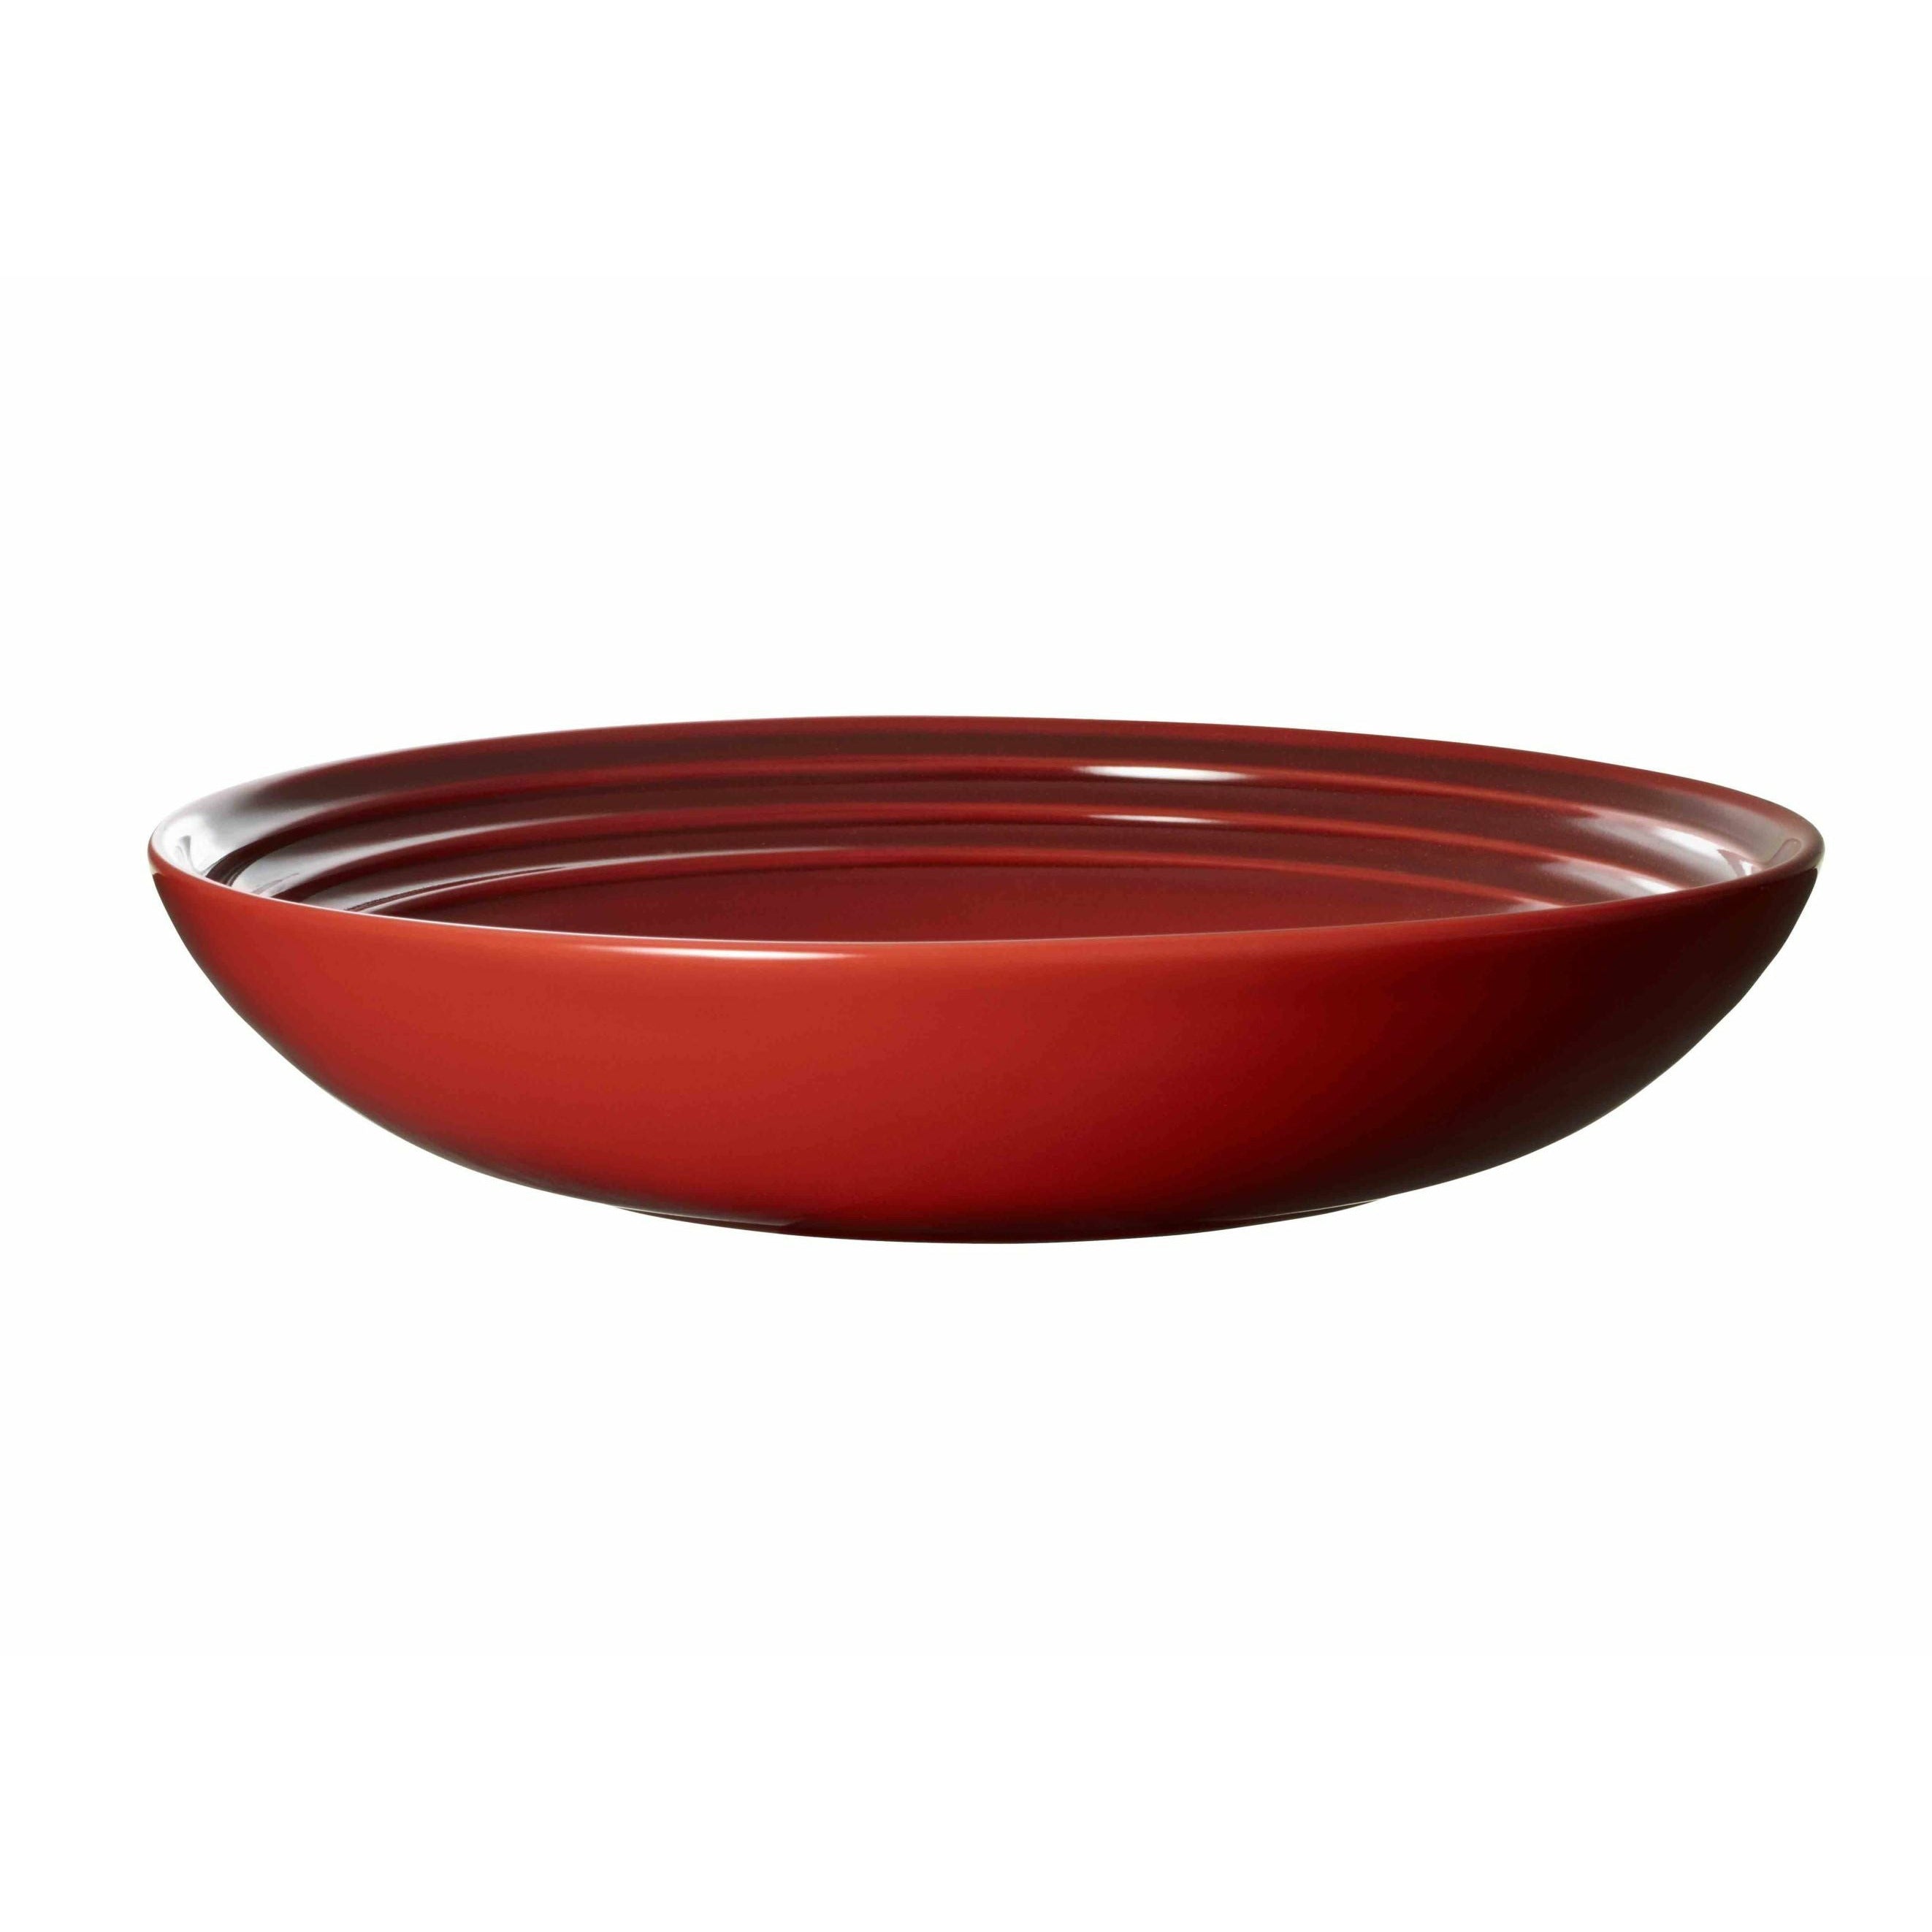 Le Creuset Assiette de soupe signature 22 cm, rouge cerise